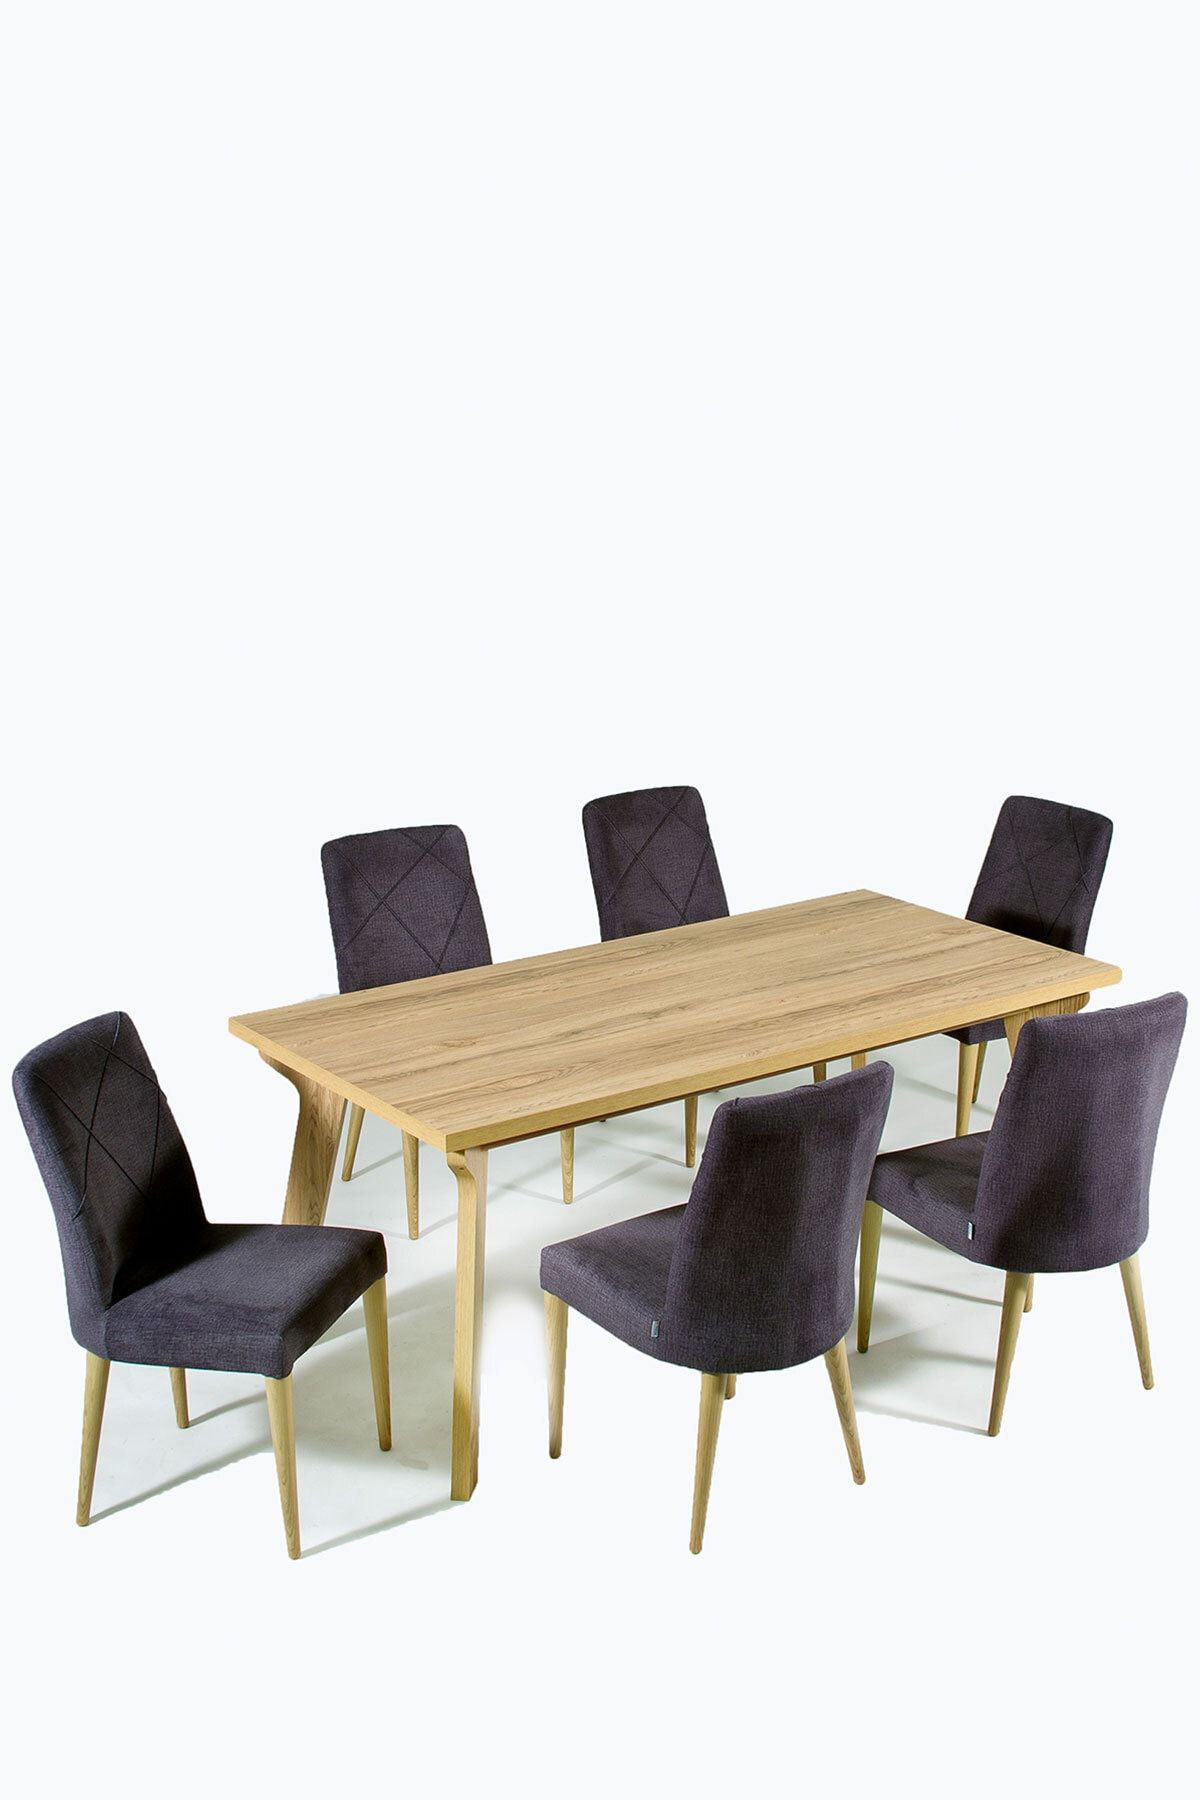 Modalife Alize 6 Sandalye 1 Sabit Masa Yemek Masası Takımı 6 Kişilik - Ceviz